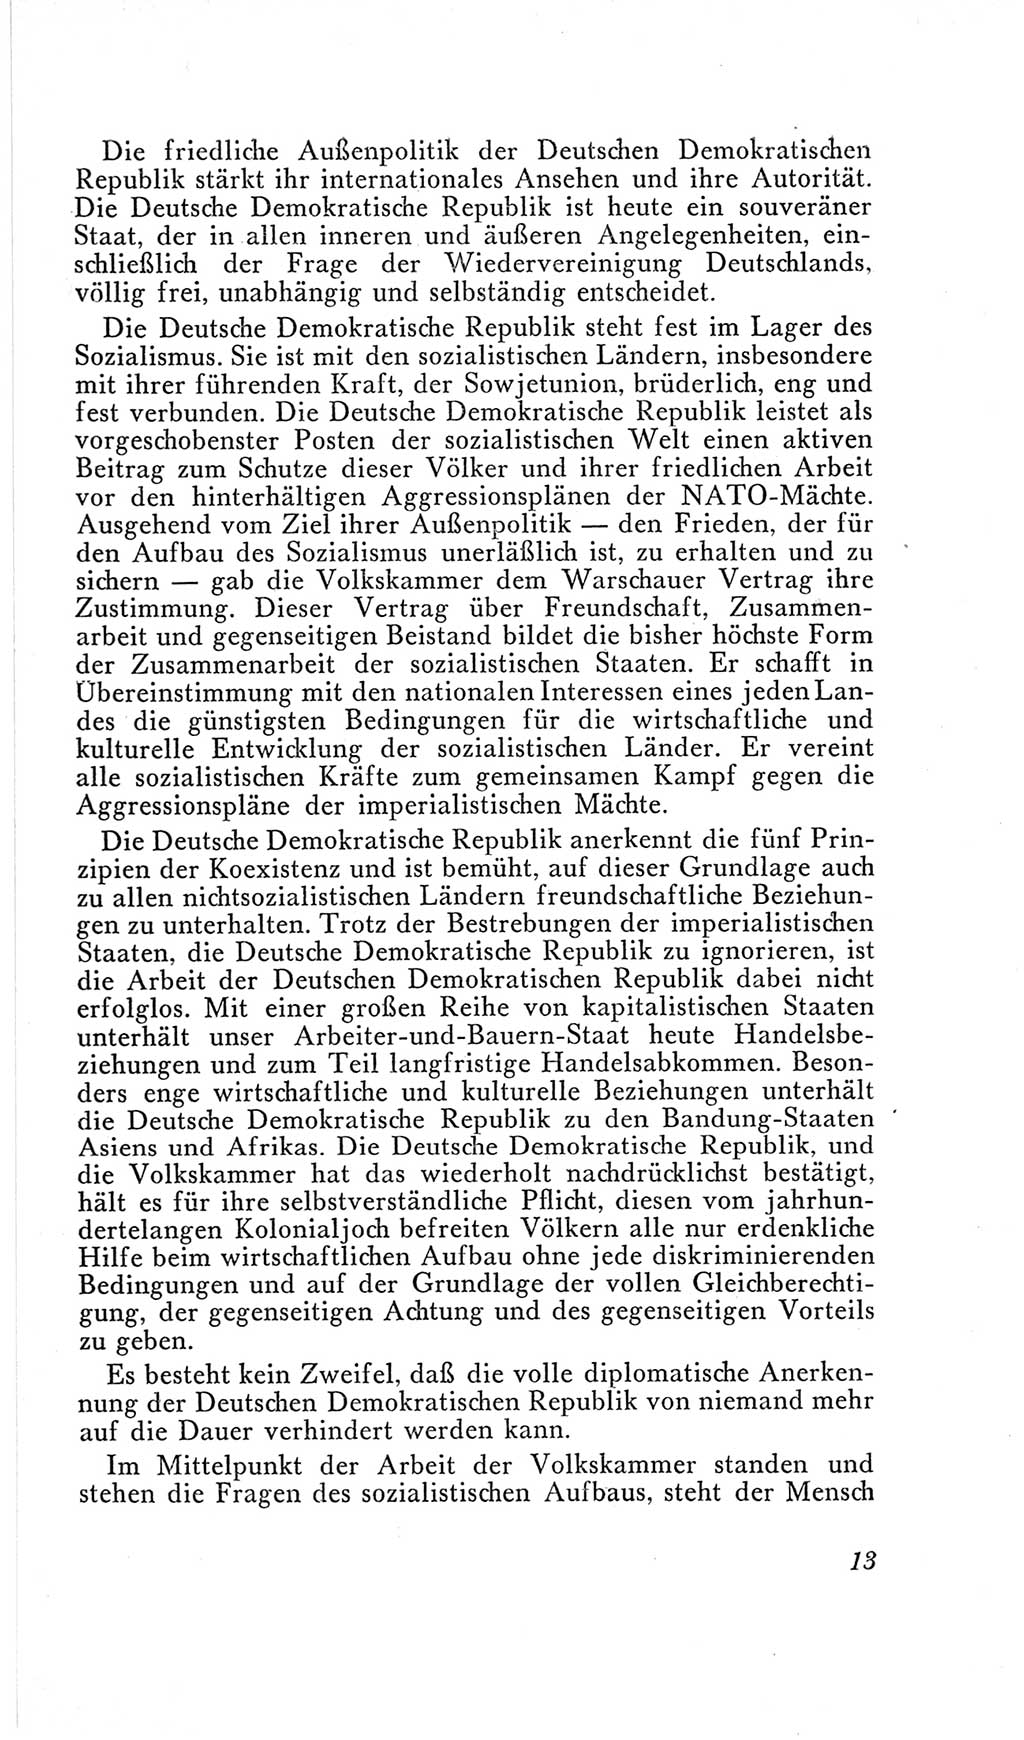 Handbuch der Volkskammer (VK) der Deutschen Demokratischen Republik (DDR), 2. Wahlperiode 1954-1958, Seite 13 (Hdb. VK. DDR, 2. WP. 1954-1958, S. 13)